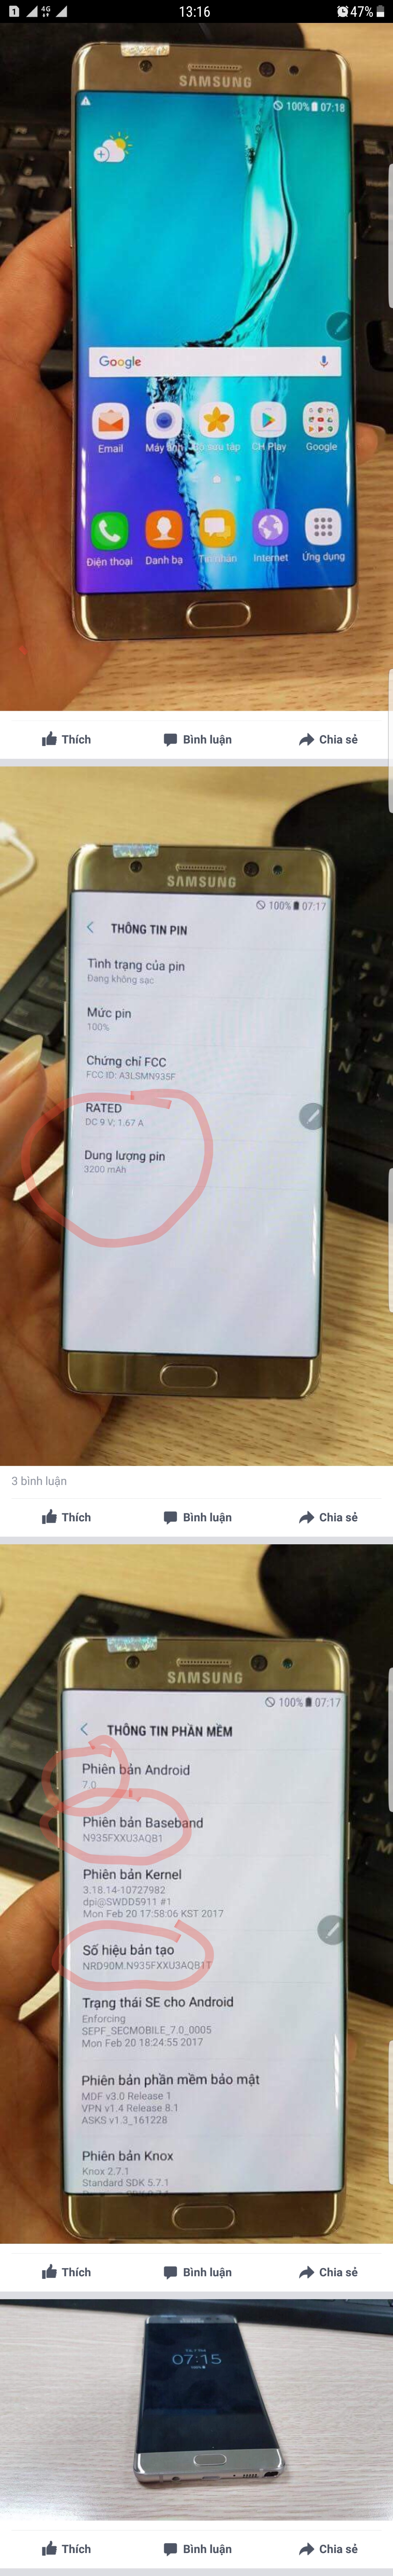 Galaxy Note 7 ricondizionato